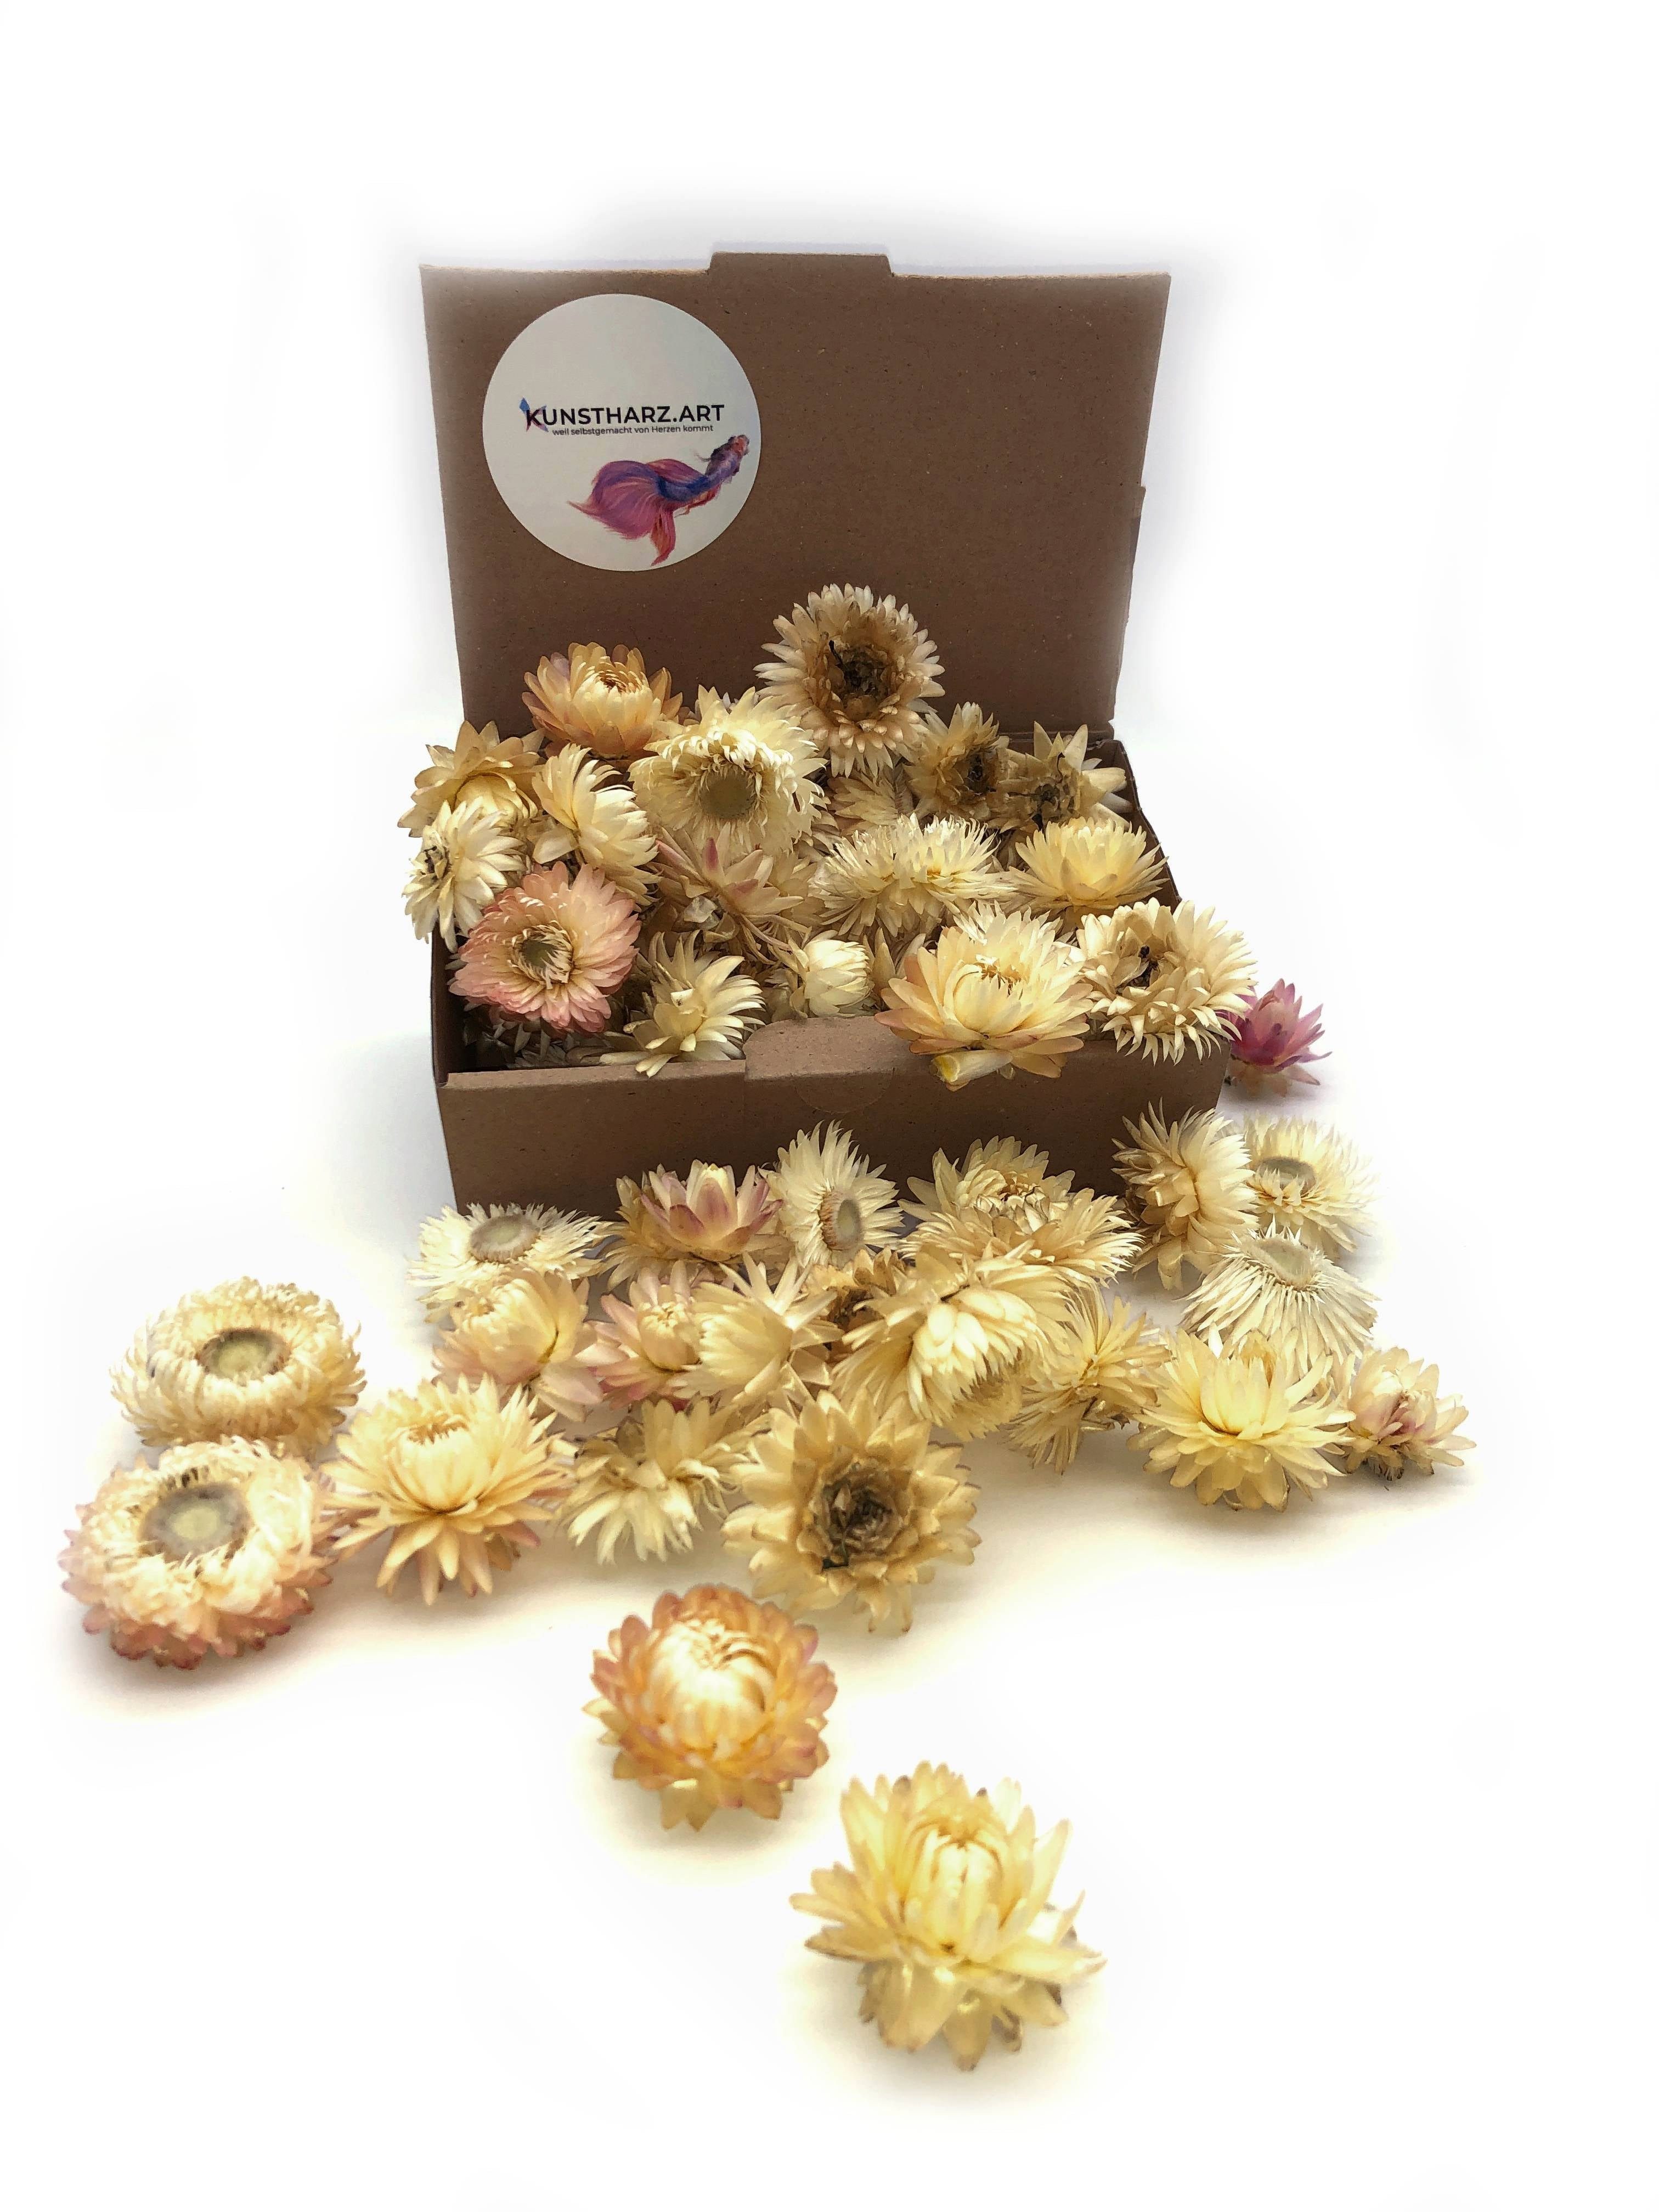 Trockenblume Strohblumenköpfe Helichrysum getrocknet: gemischt oder farblich sortiert - Weiß, Kunstharz.Art